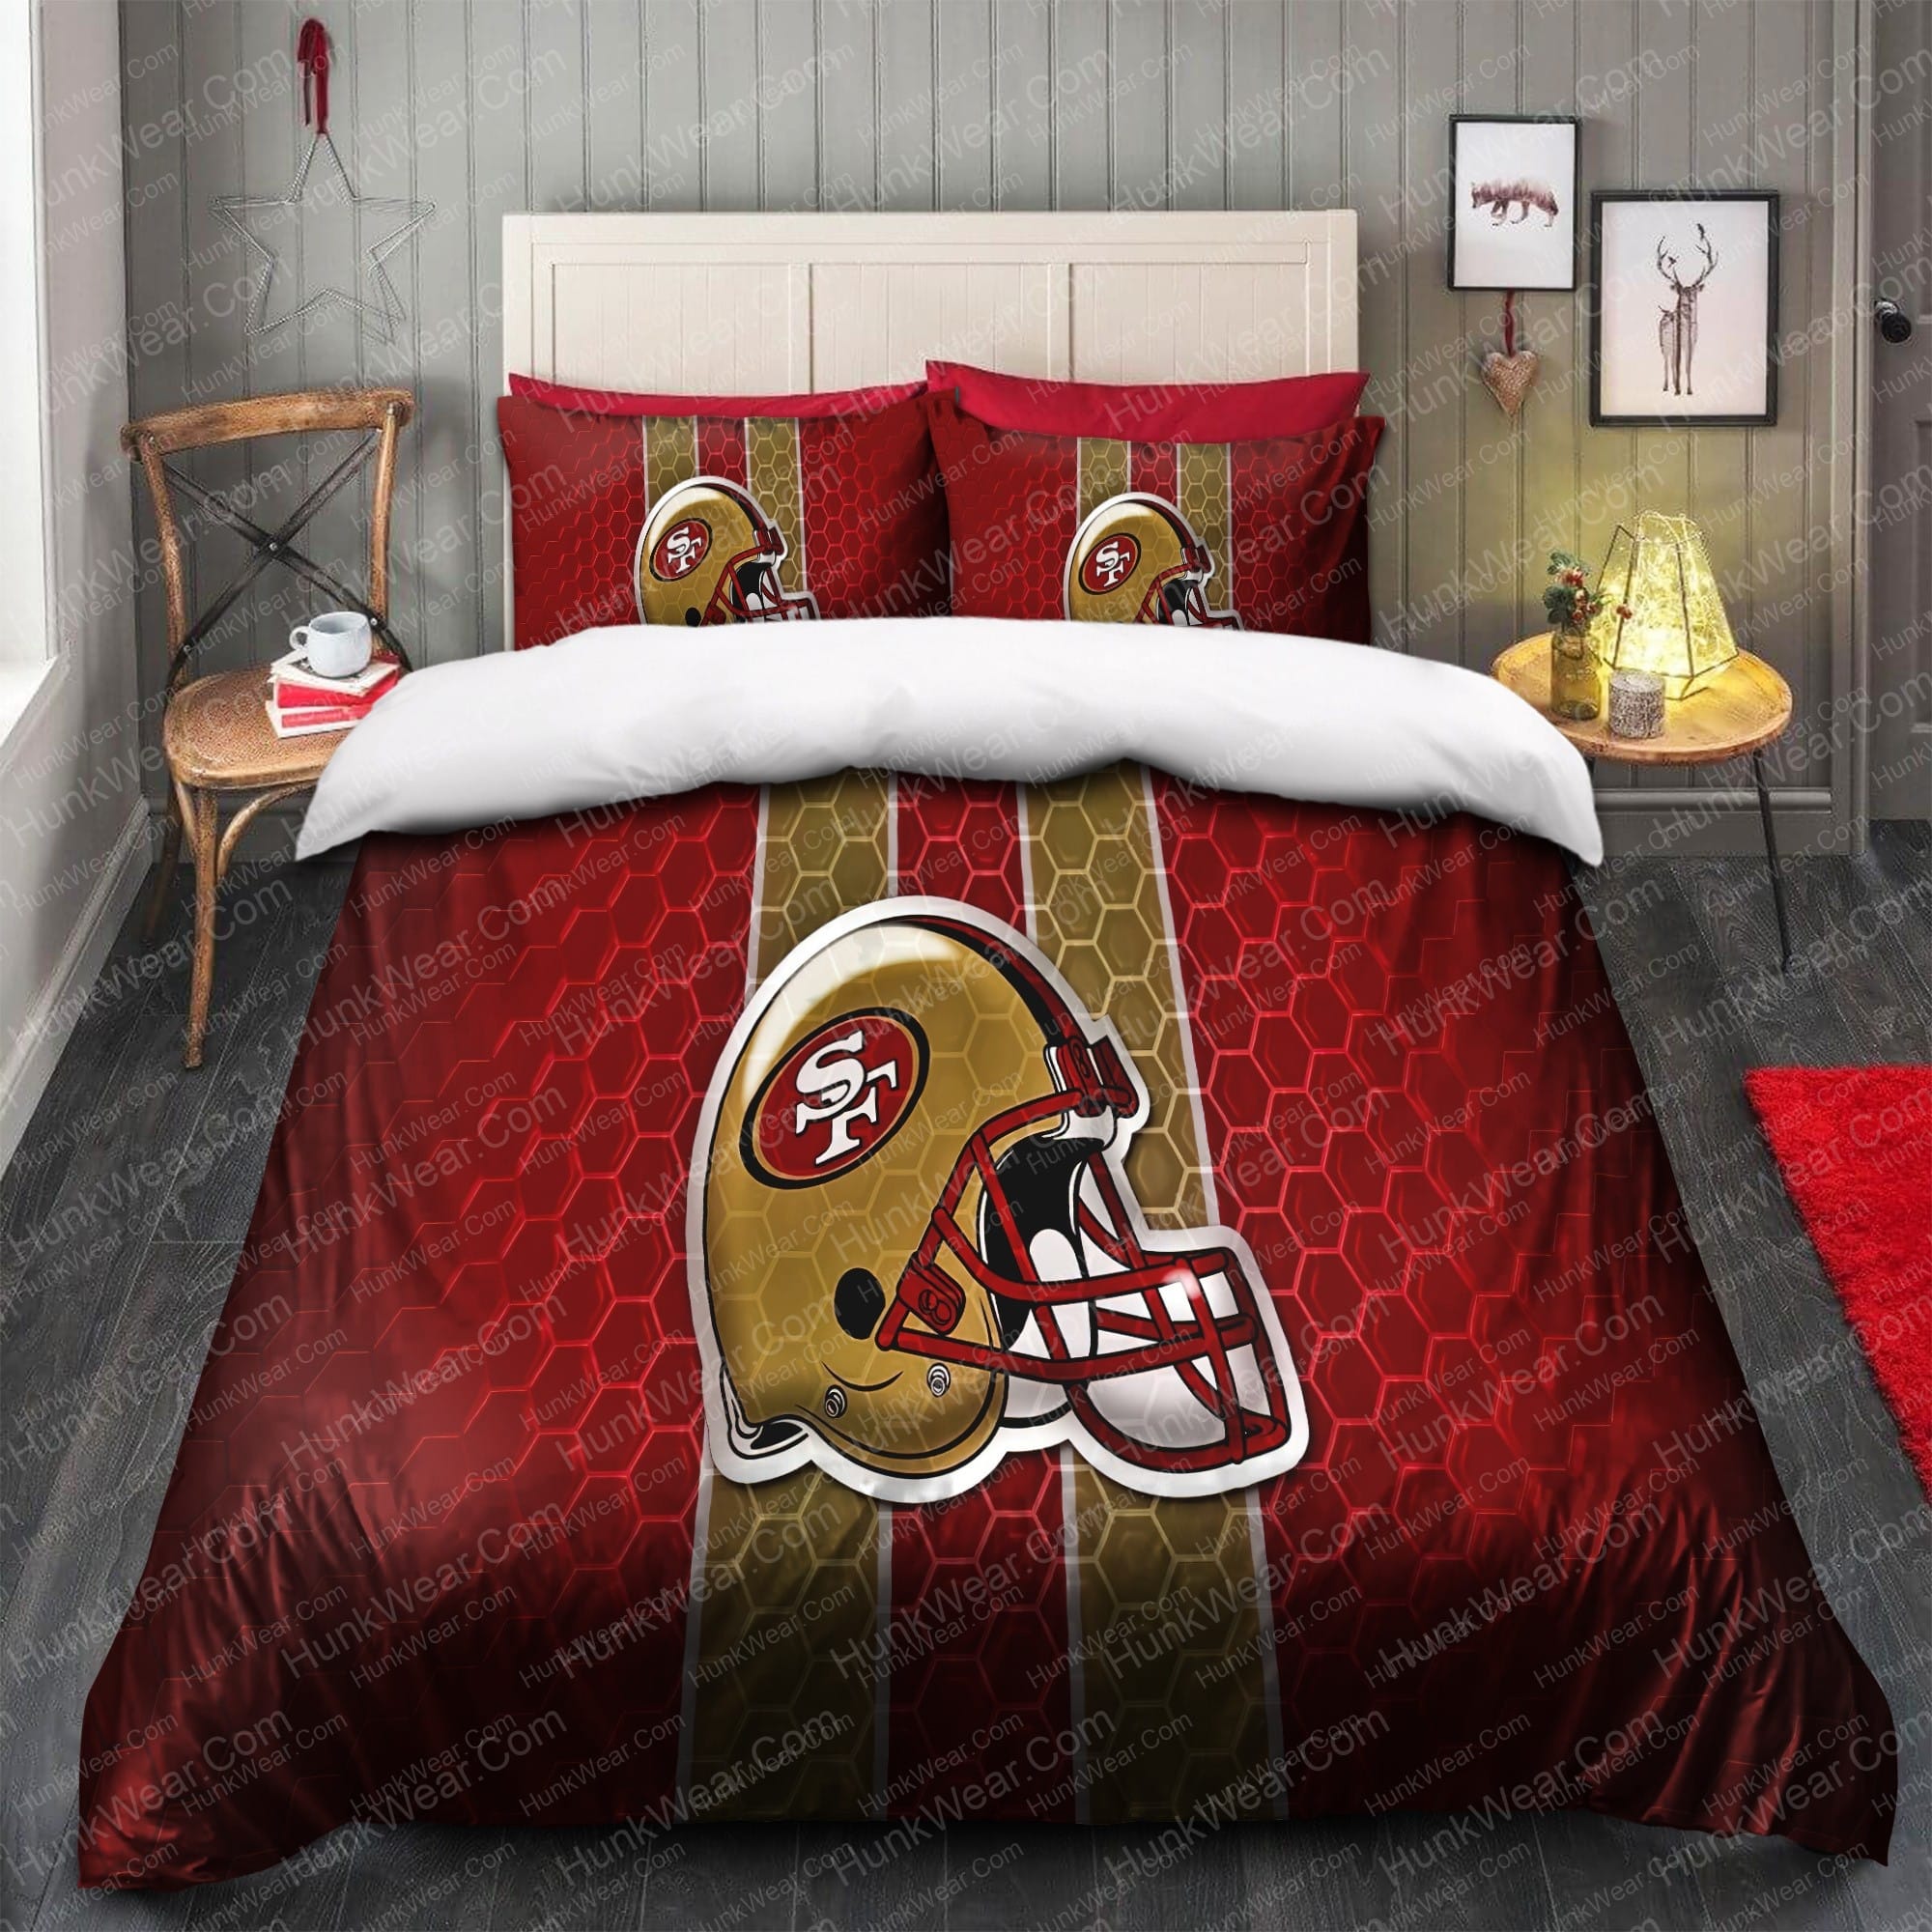 49ers helmet logo bed set bedding set 1